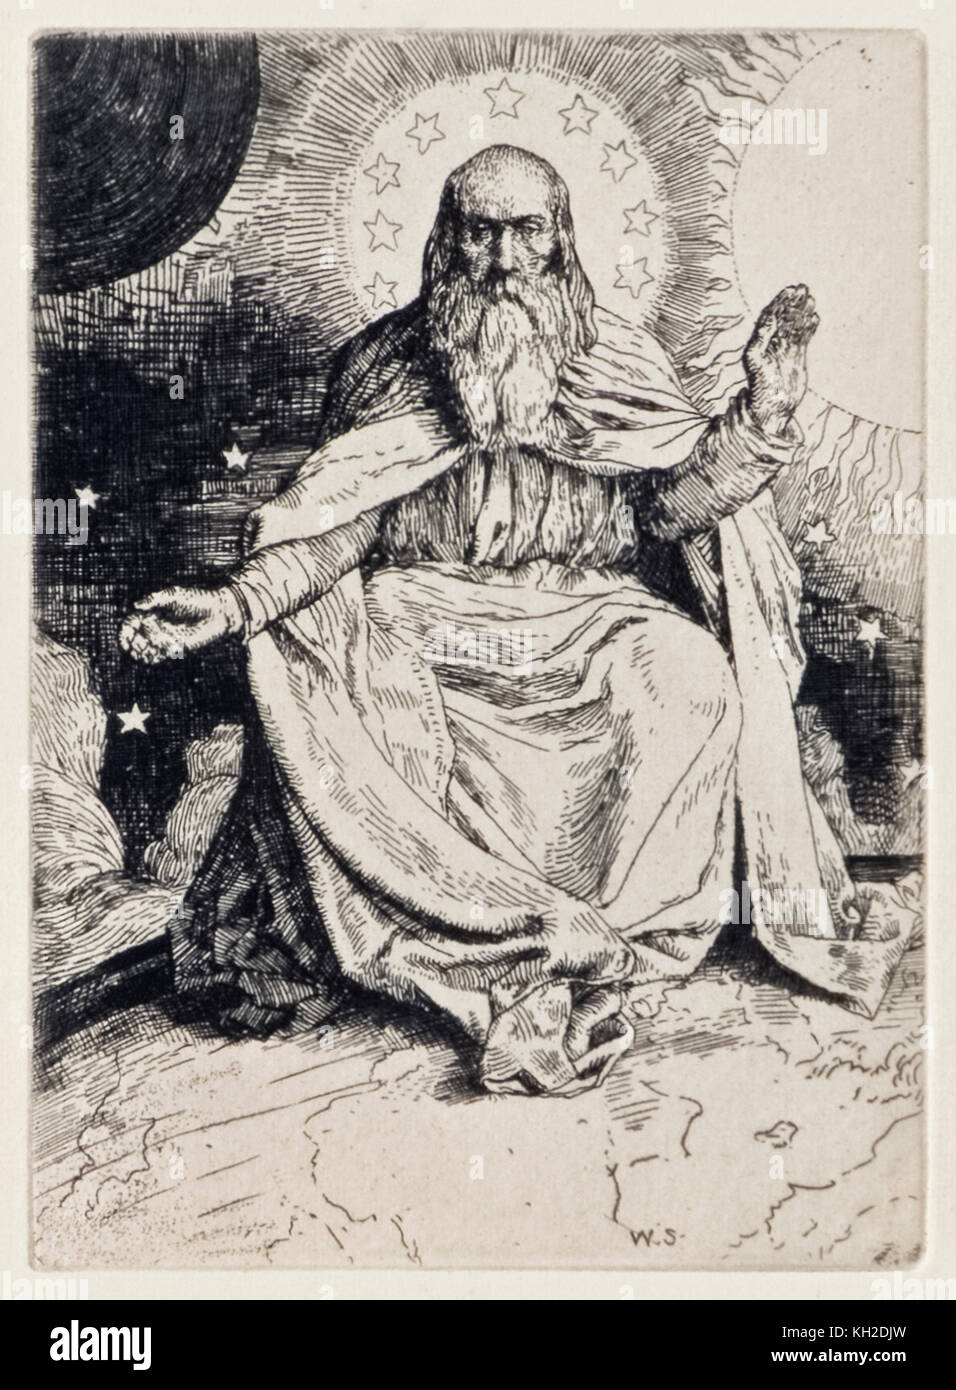 'La création du Monde' de 'Paradis perdu' de John Milton (1608-1674) une série de 12 illustrations gravées par William Strang (1859-1921). Voir plus d'informations ci-dessous. Banque D'Images